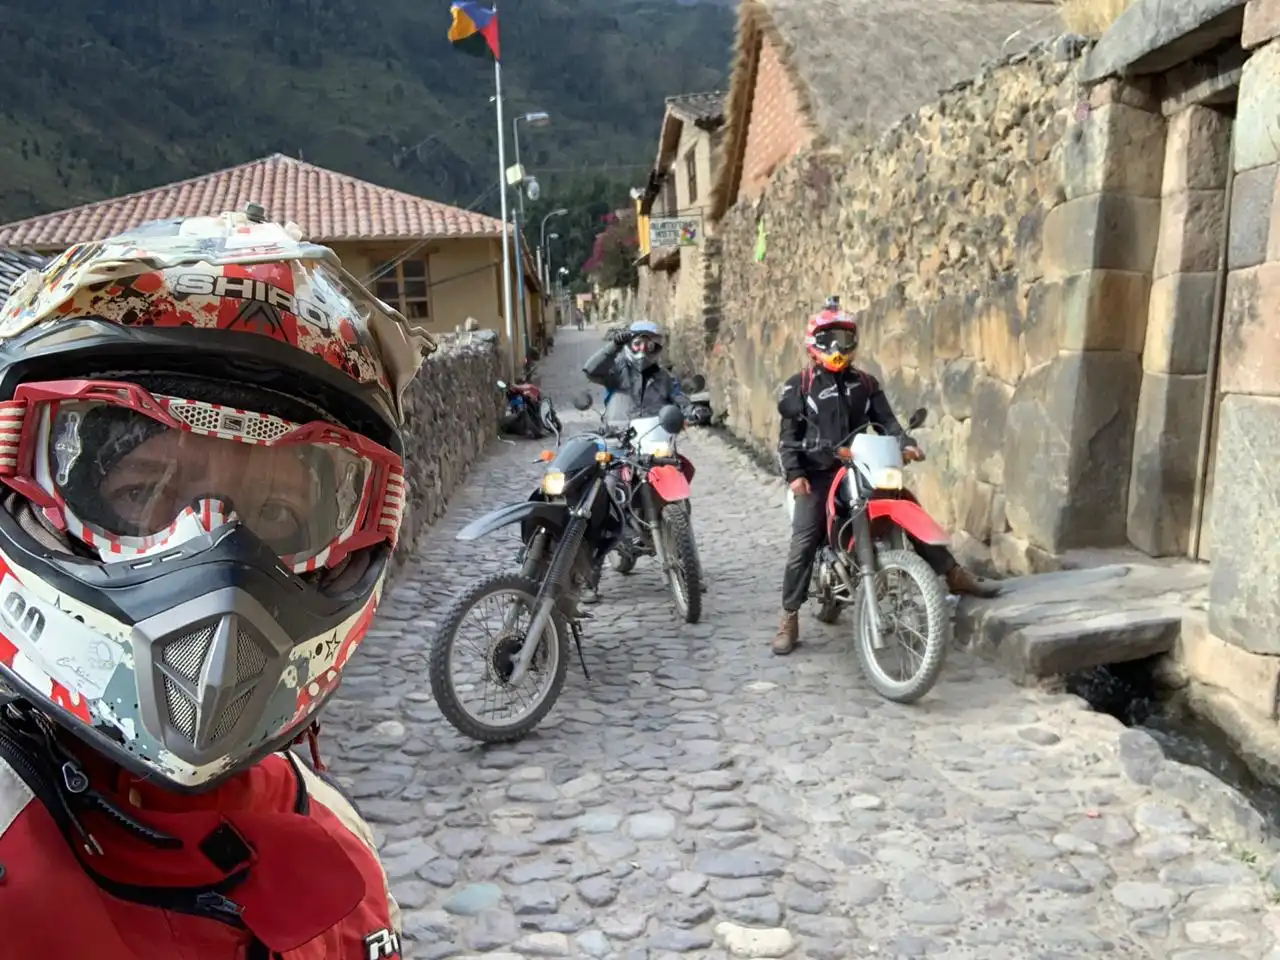 Ruta del Inca en Moto a Machu Picchu con Enduro Austral